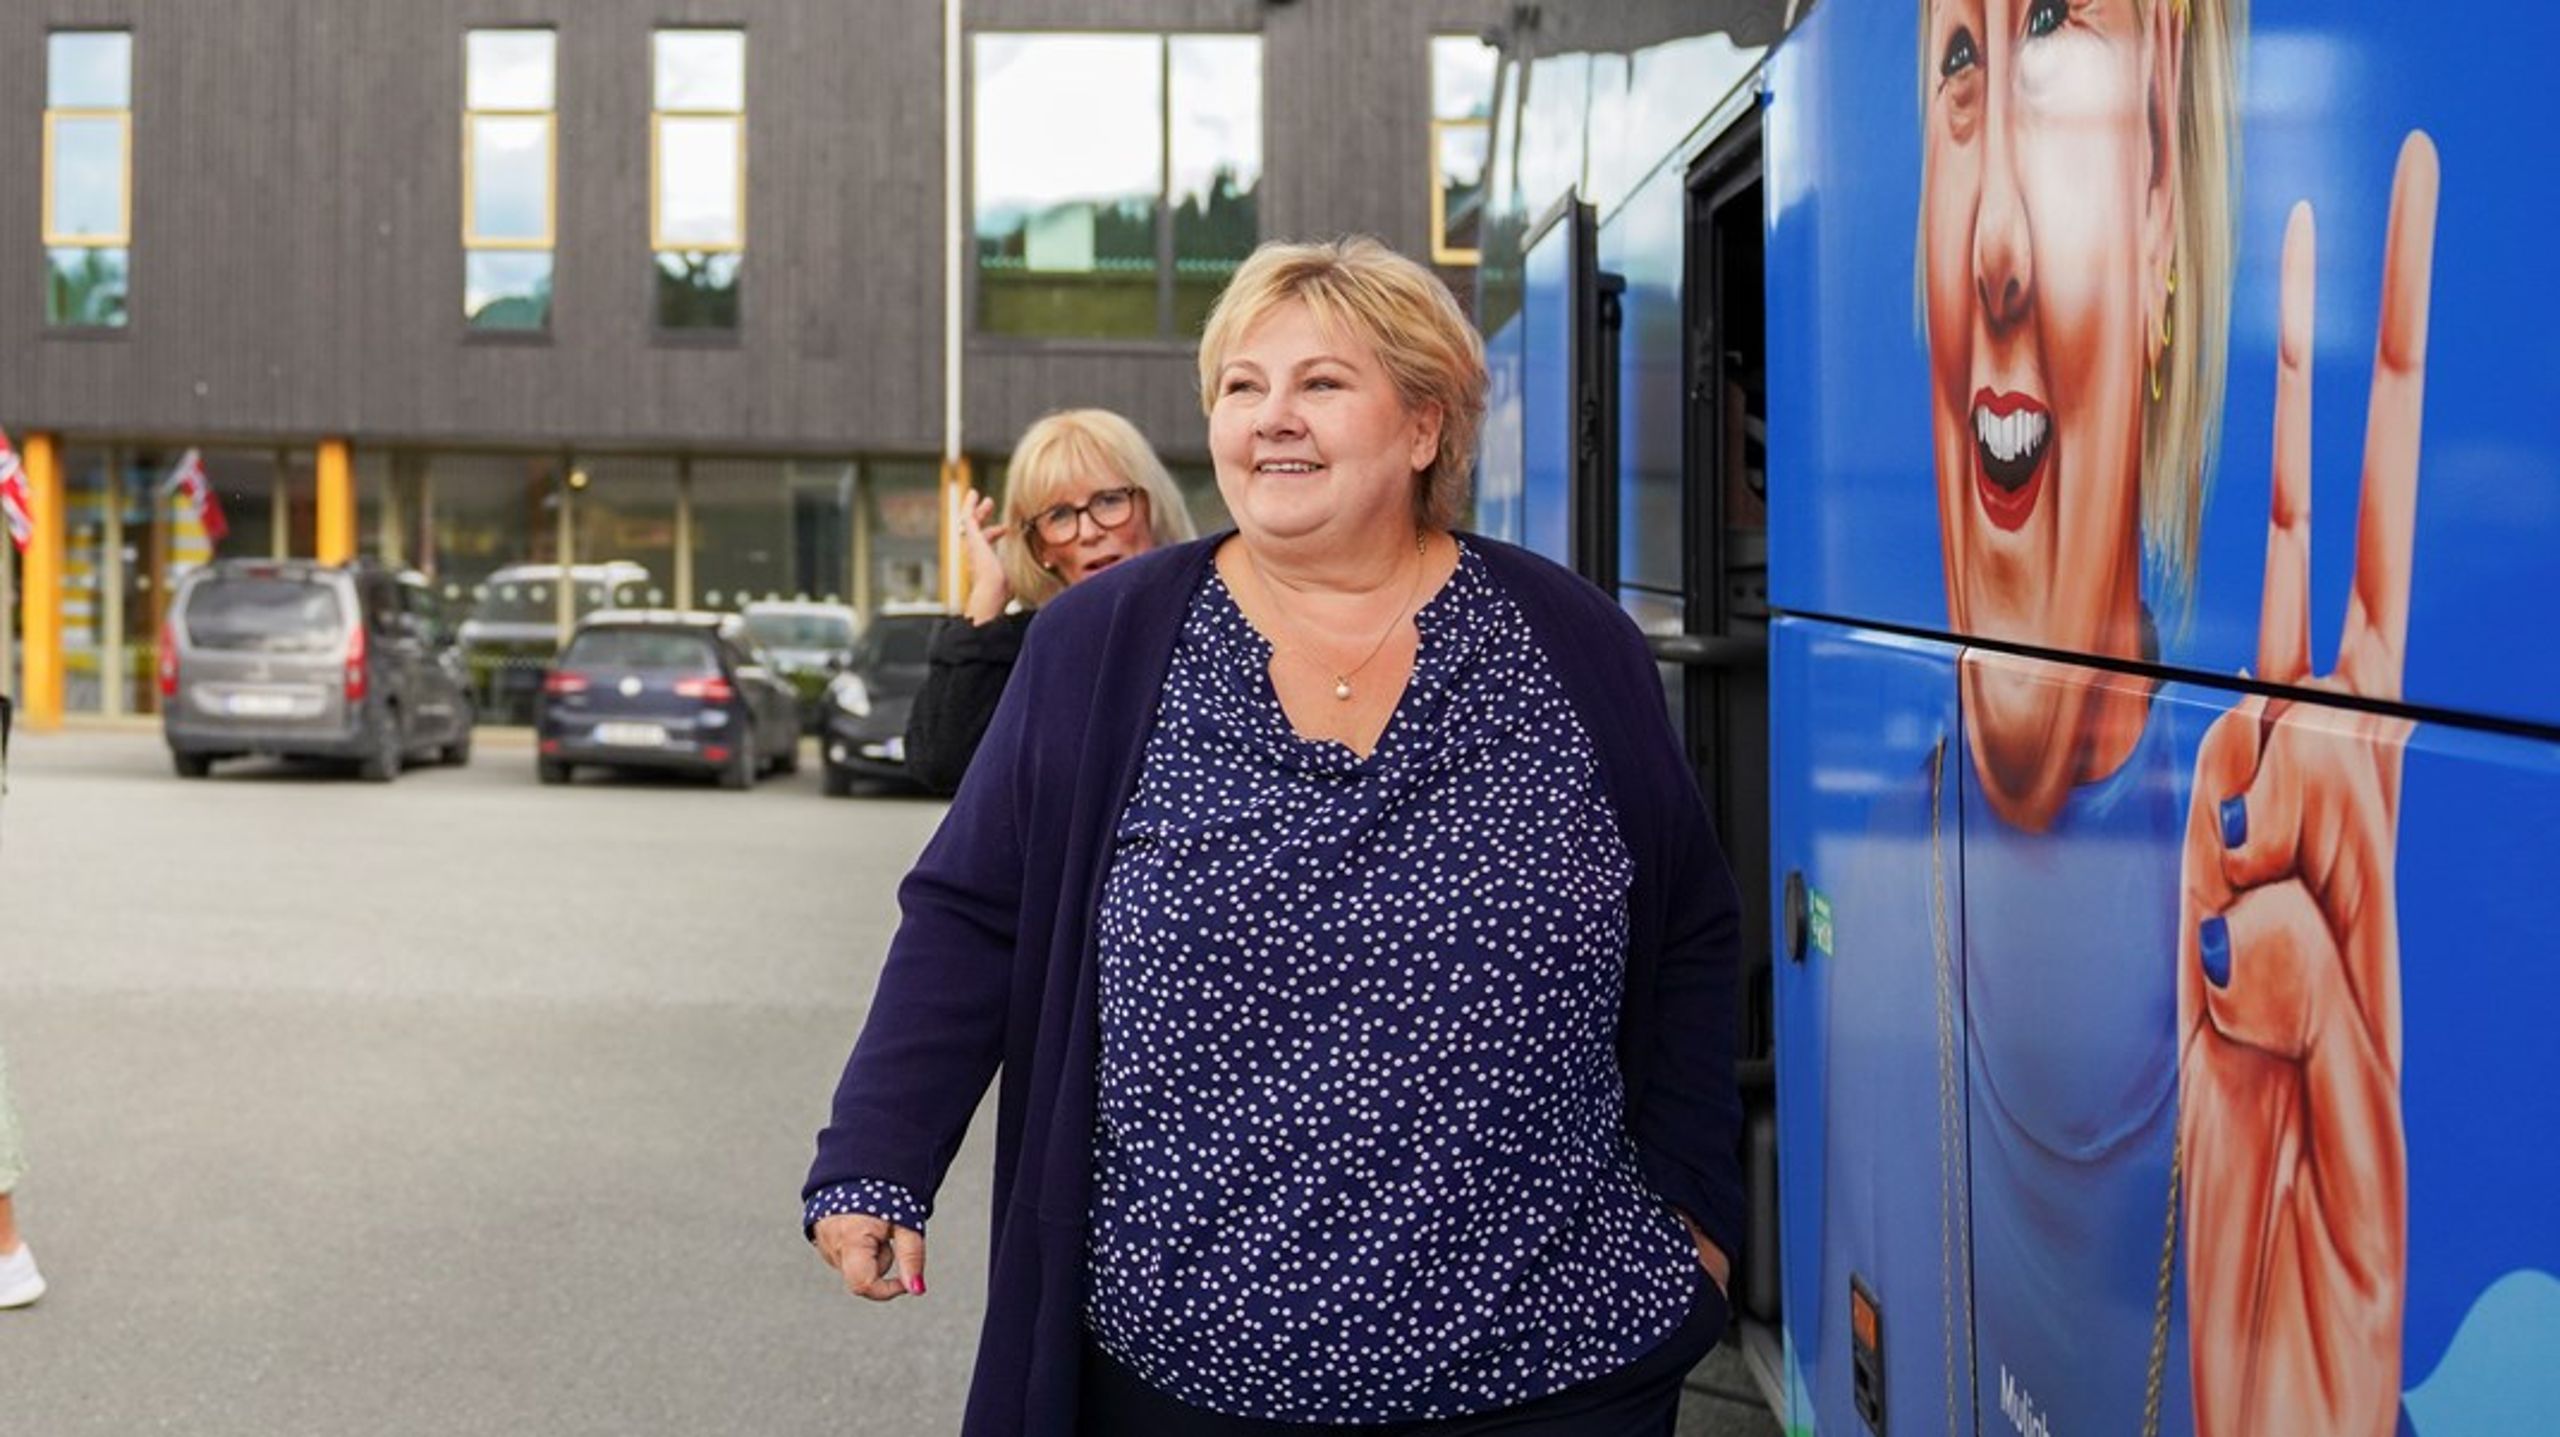 Høyres partileder Erna Solberg, her&nbsp;ved Høyrebussen på turné til Orkland, har lykkes med å holde oppslutningen oppe gjennom en lang valgkamp.